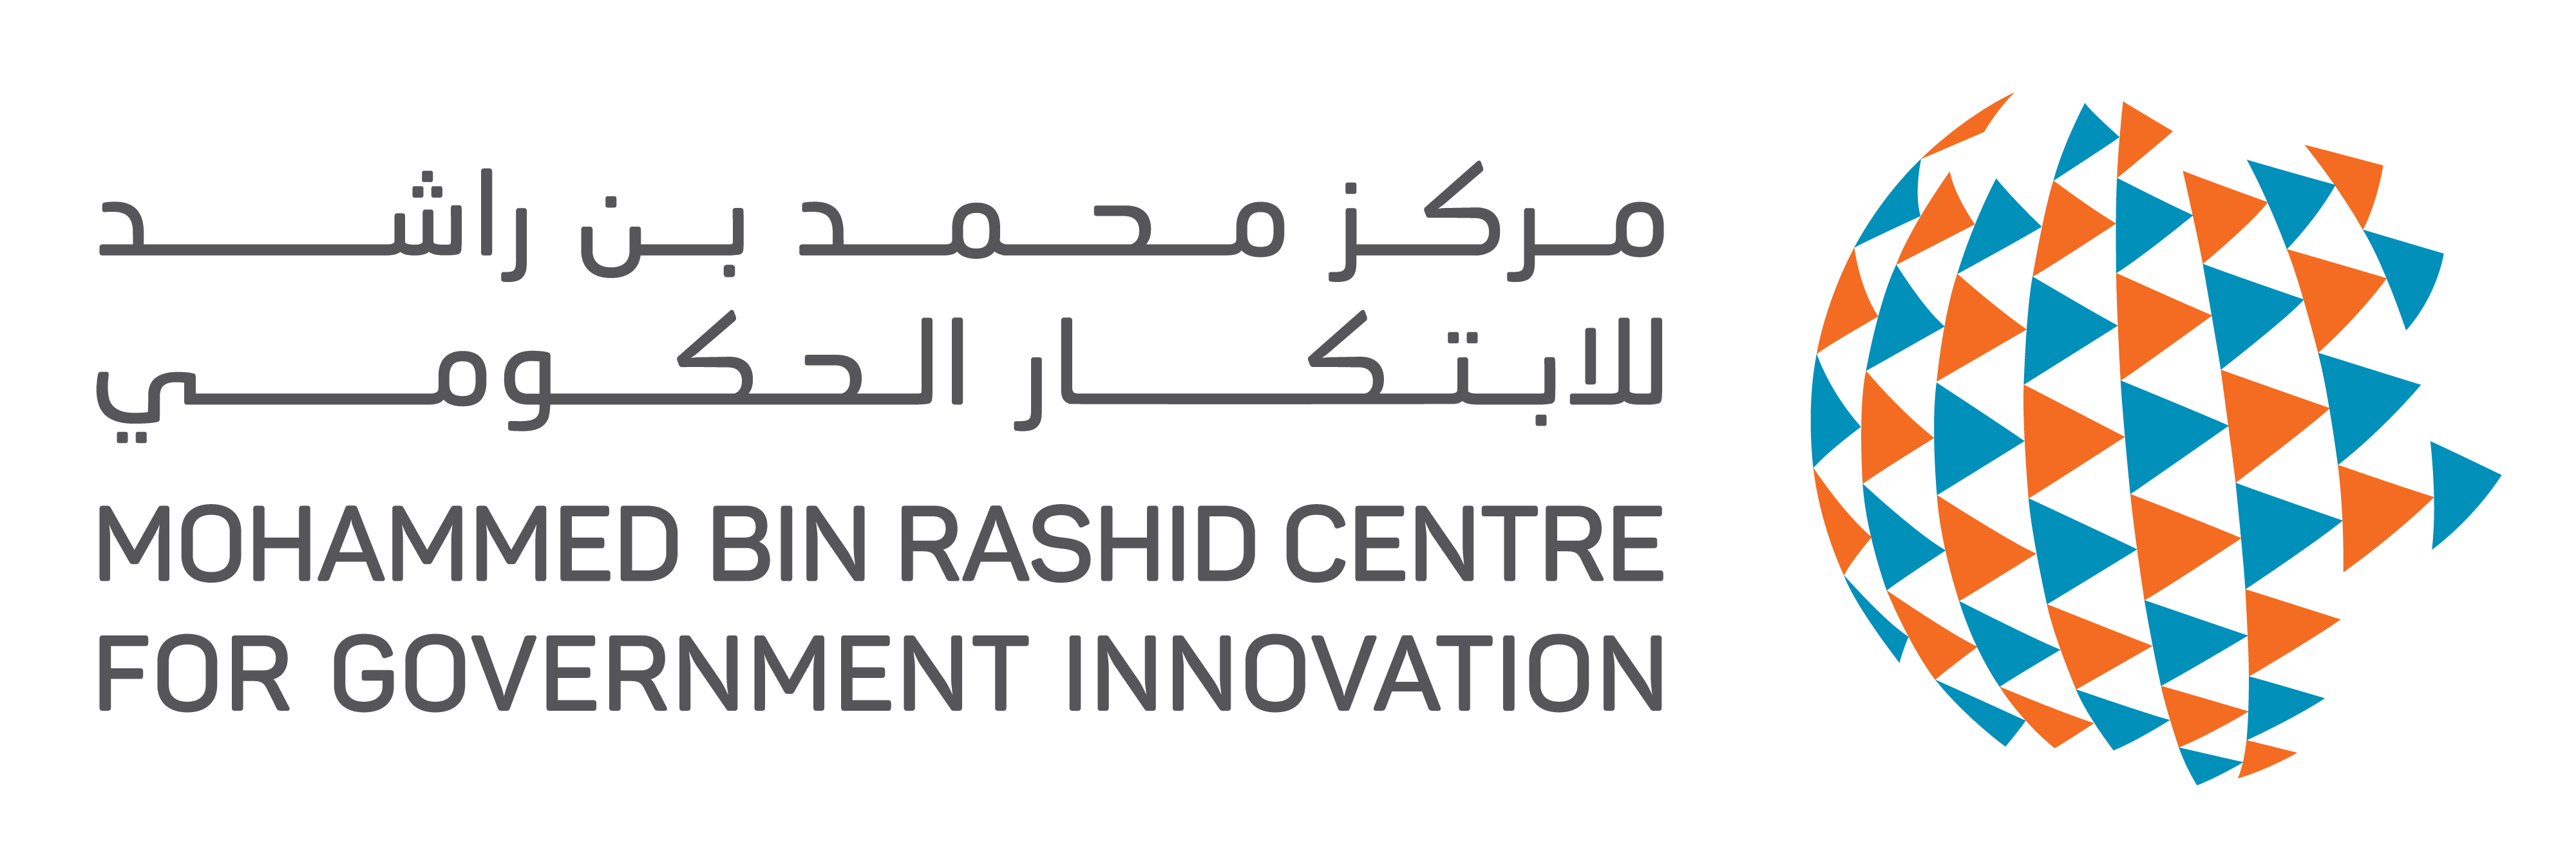 The Mohammed Bin Rashid Centre for Government Innovation's logo